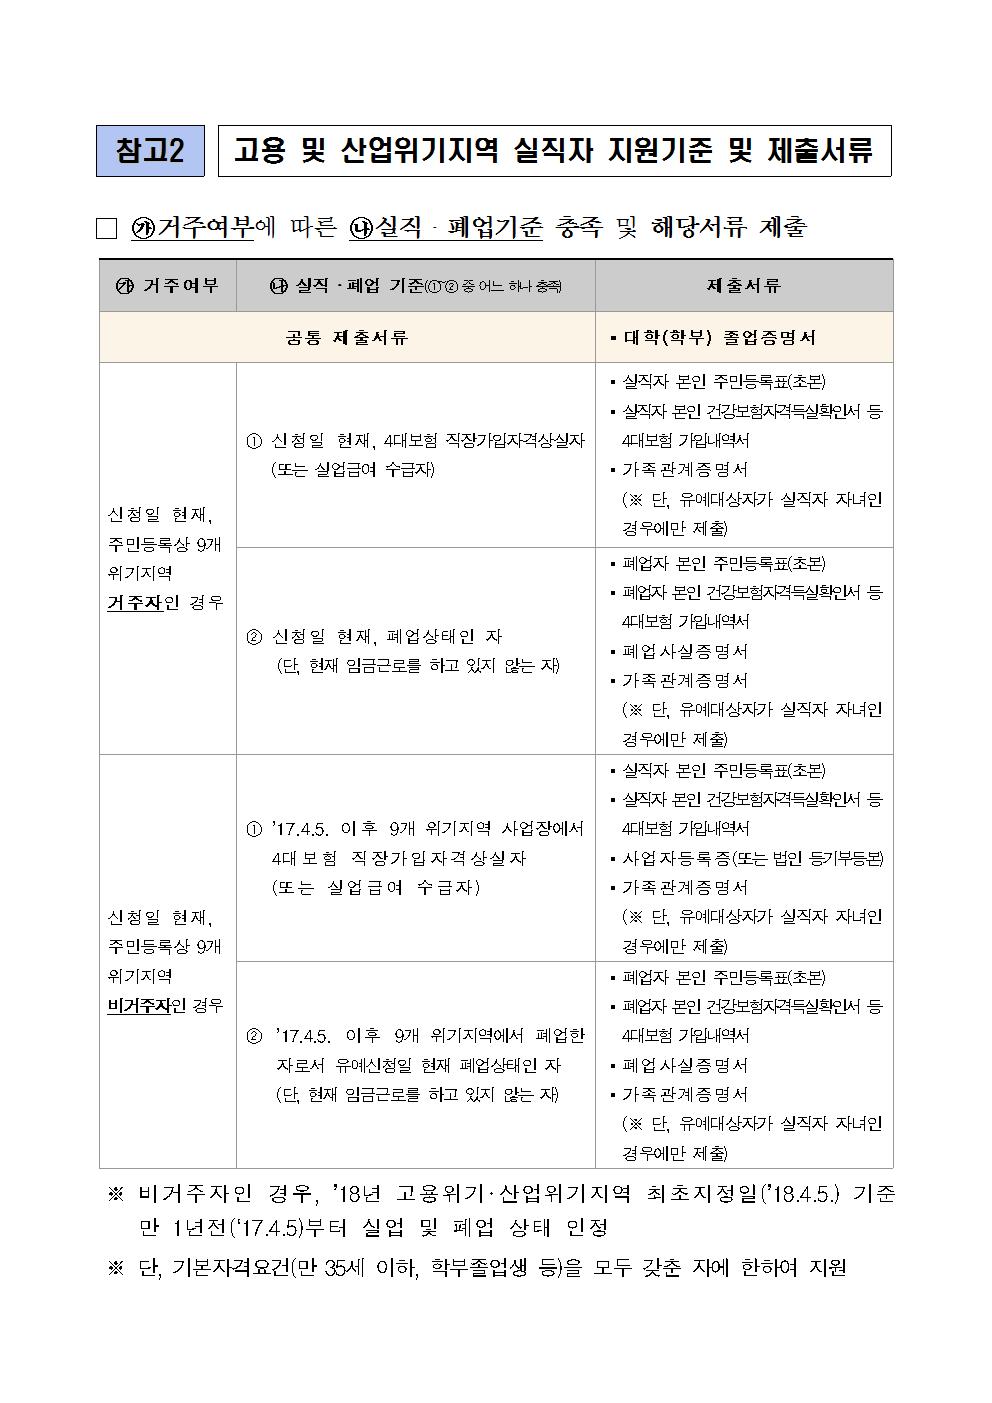 08-30(목)[보도자료] 한국장학재단, 2018년 일반상환학자금 특별상환유예 특례조치 시행004.jpg